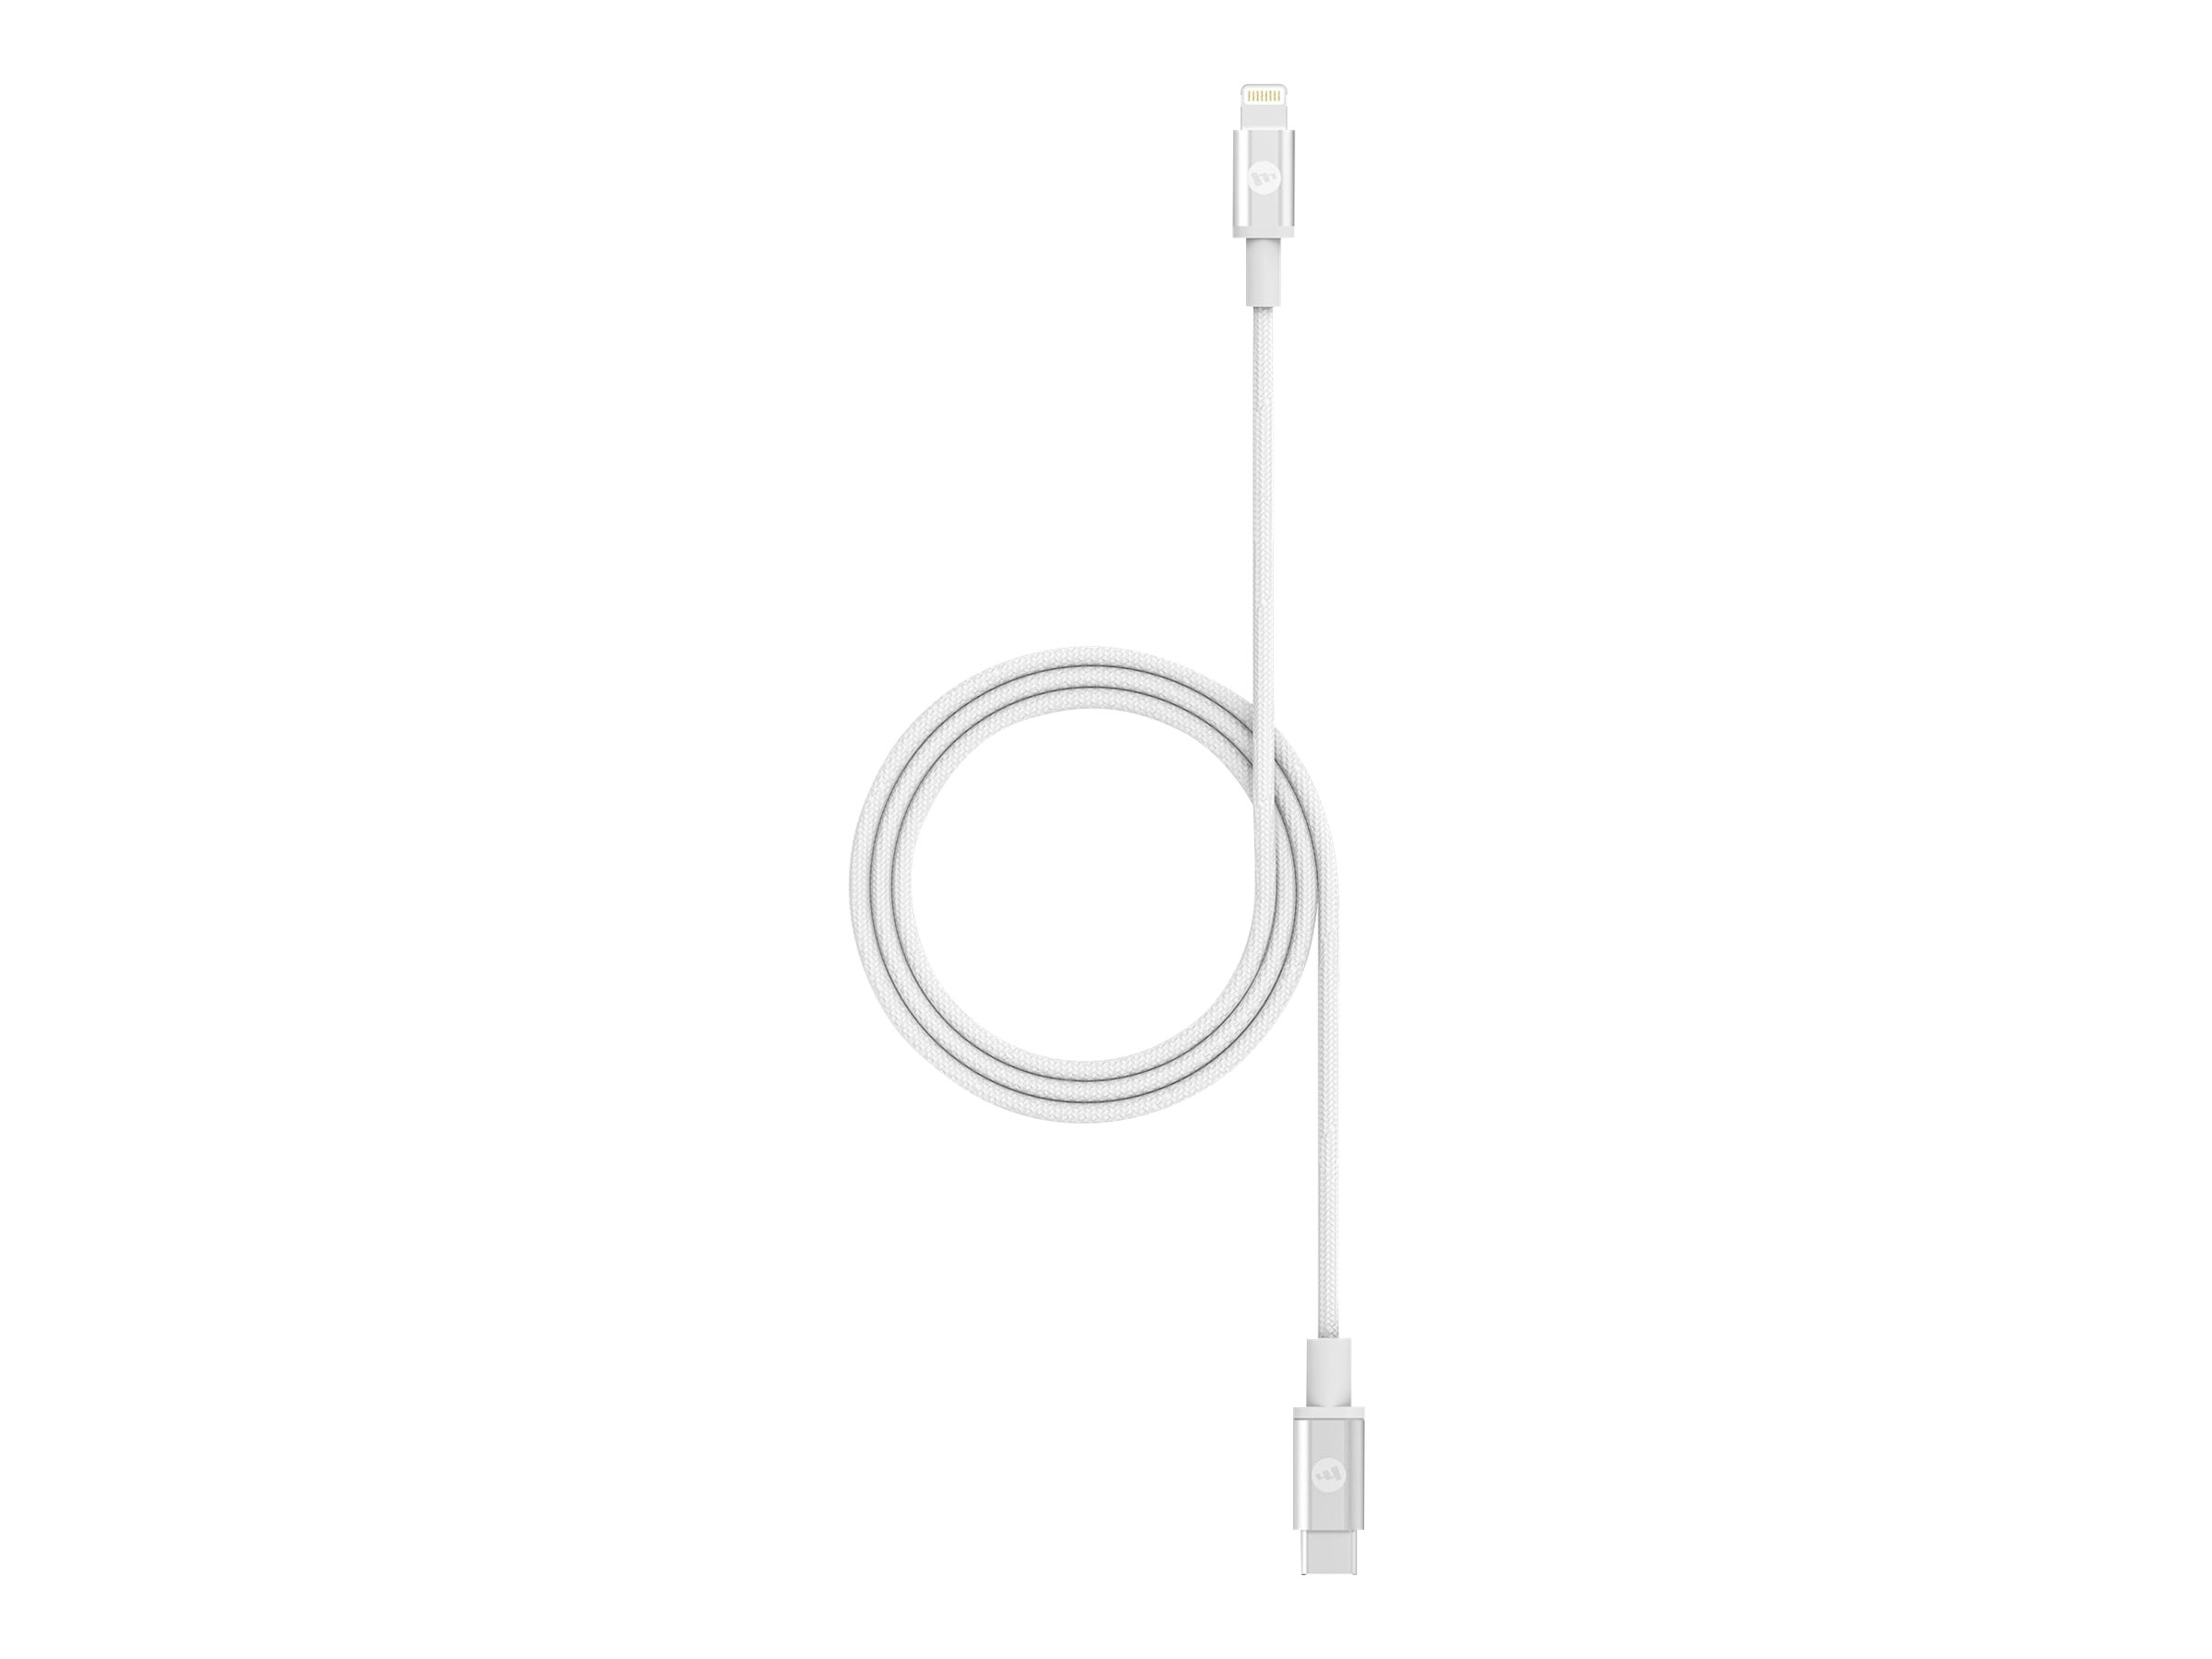 ZAGG mophie - Lightning-Kabel - 24 pin USB-C männlich zu Lightning männlich - 1 m - weiß - für Apple iPad/iPhone/iPod (Lightning)